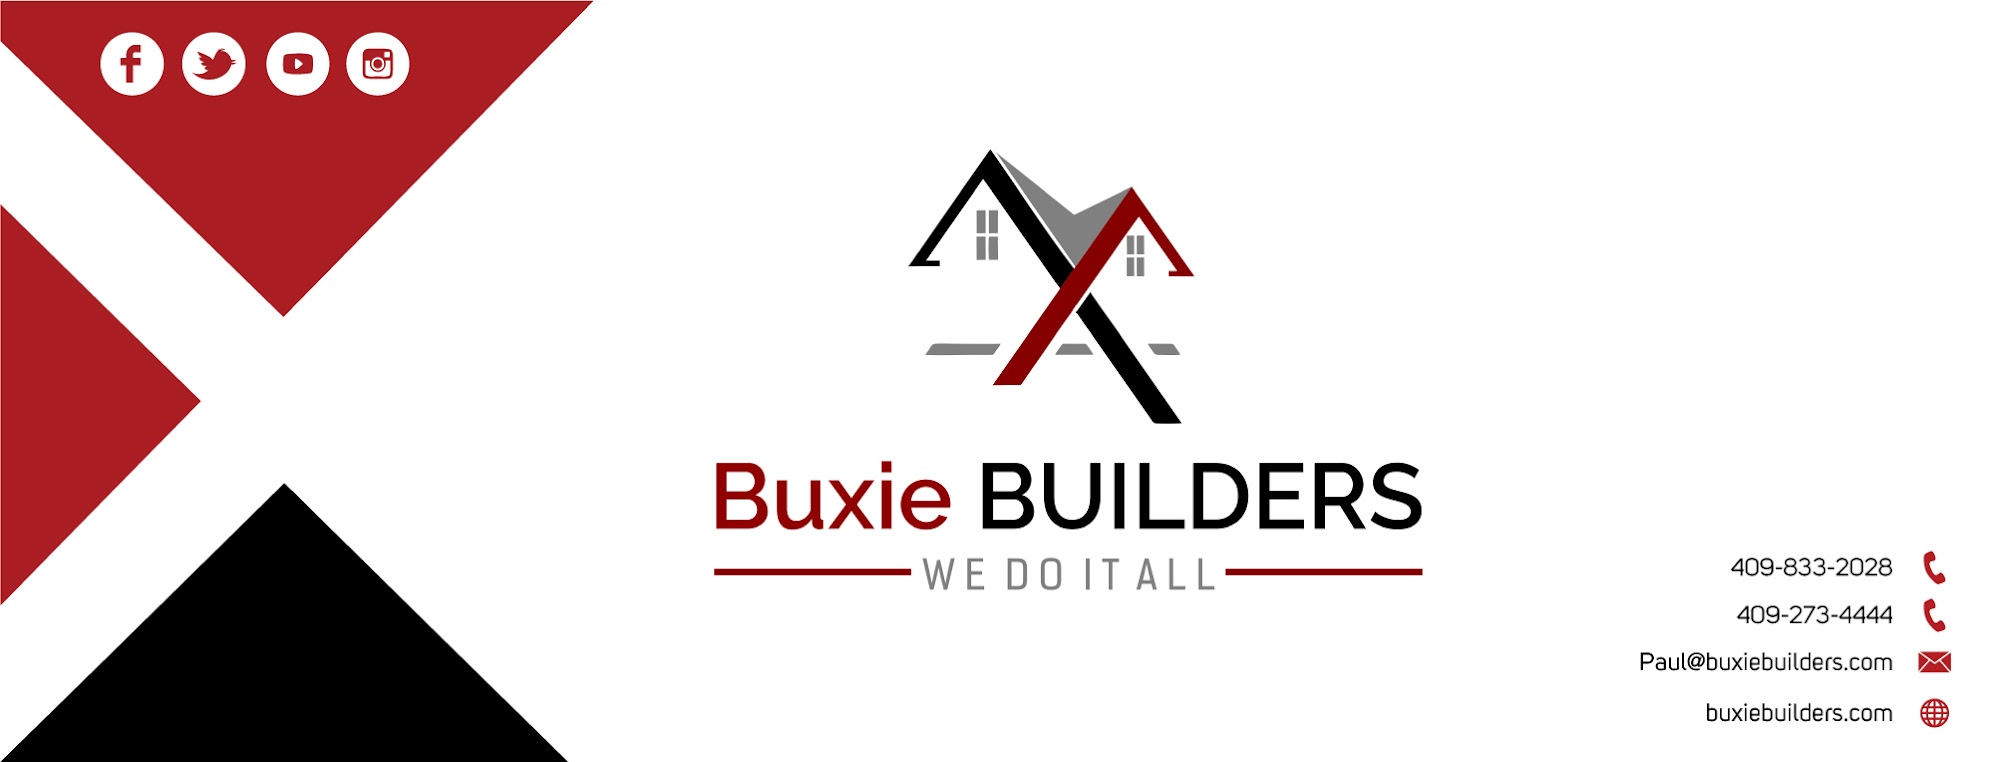 Buxie Builders